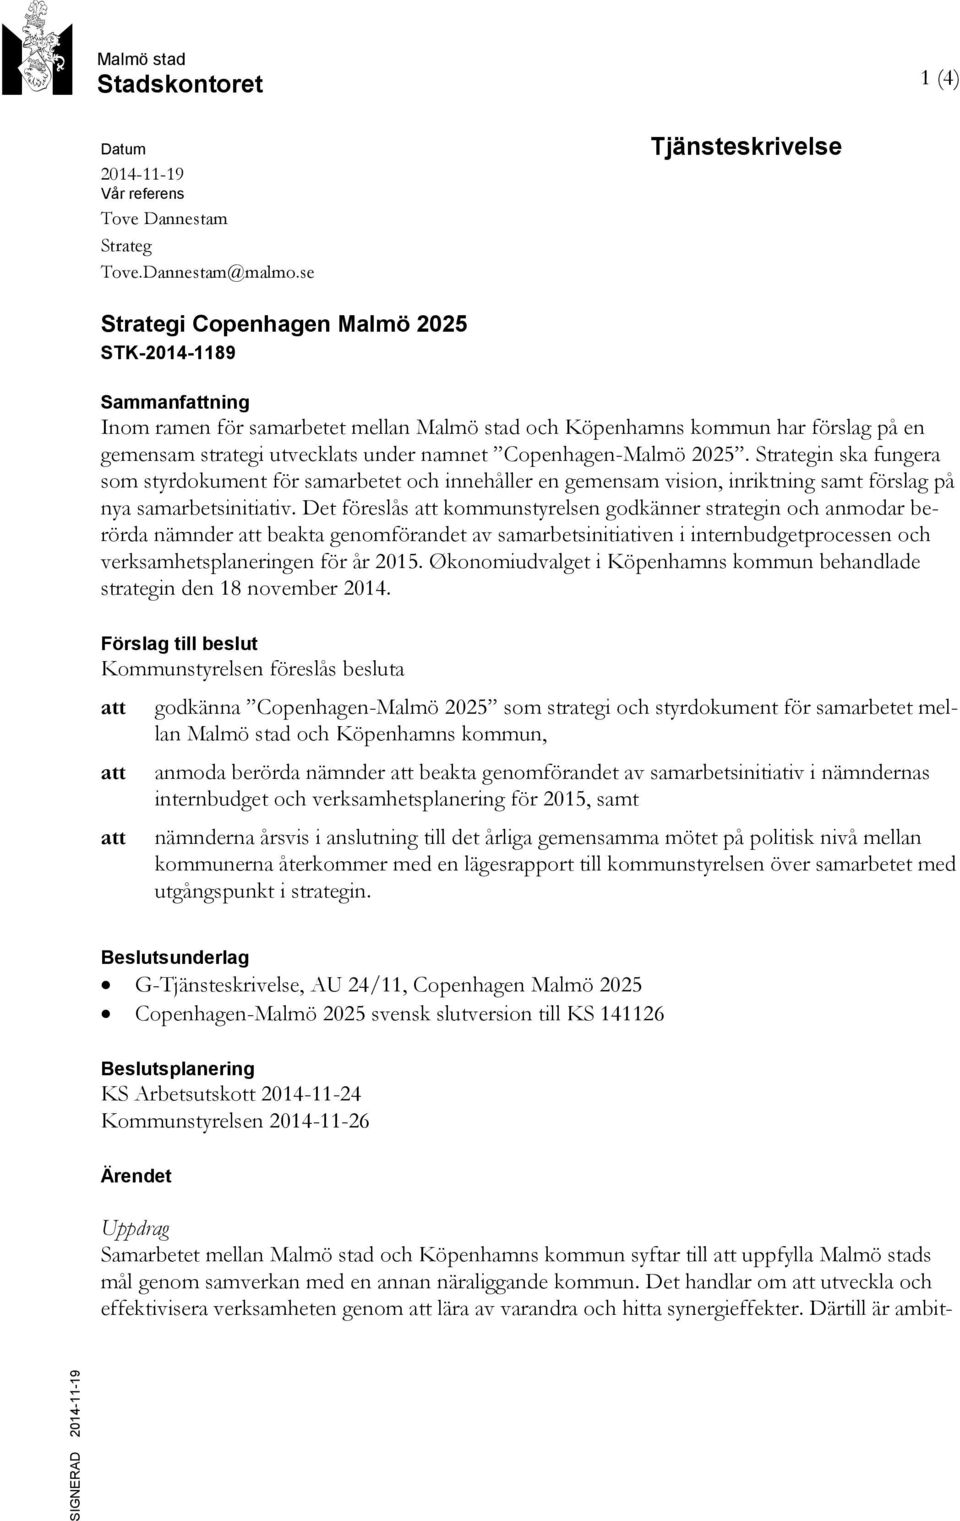 namnet Copenhagen-Malmö 2025. Strategin ska fungera som styrdokument för samarbetet och innehåller en gemensam vision, inriktning samt förslag på nya samarbetsinitiativ.